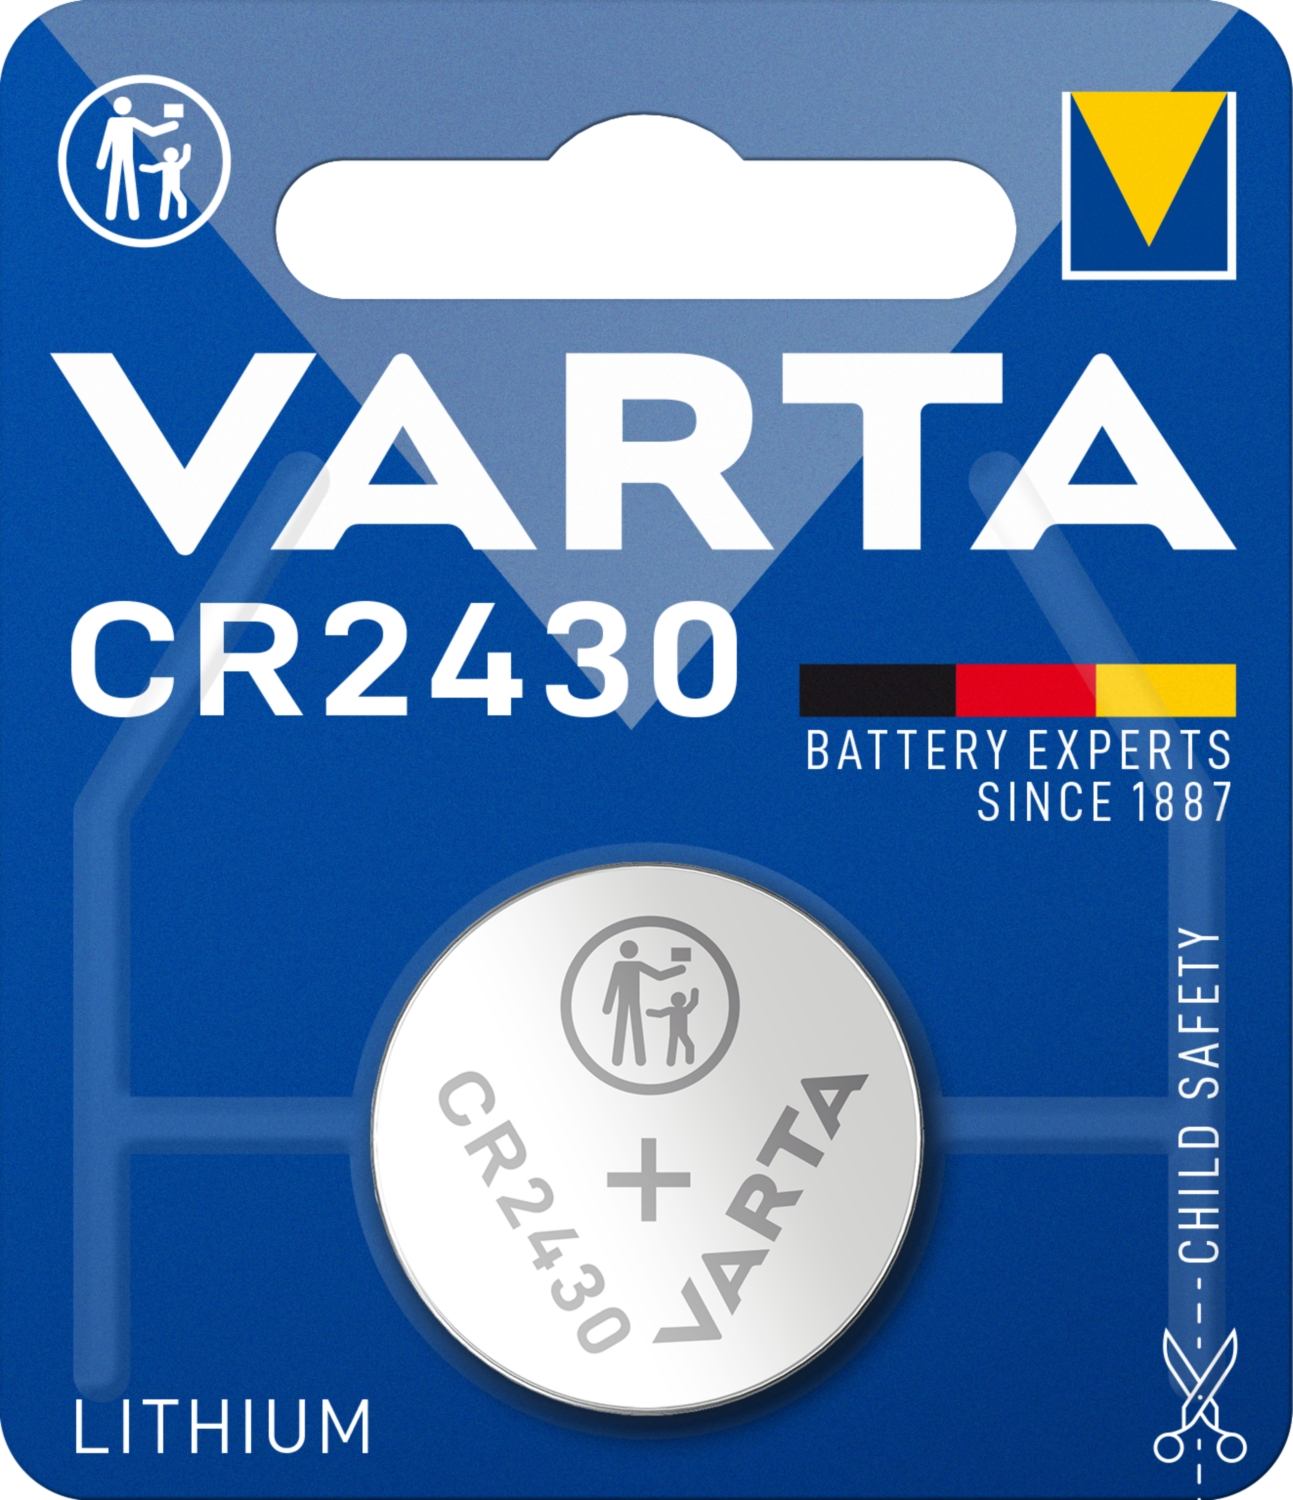 Pile bouton lithium CR2430 Varta